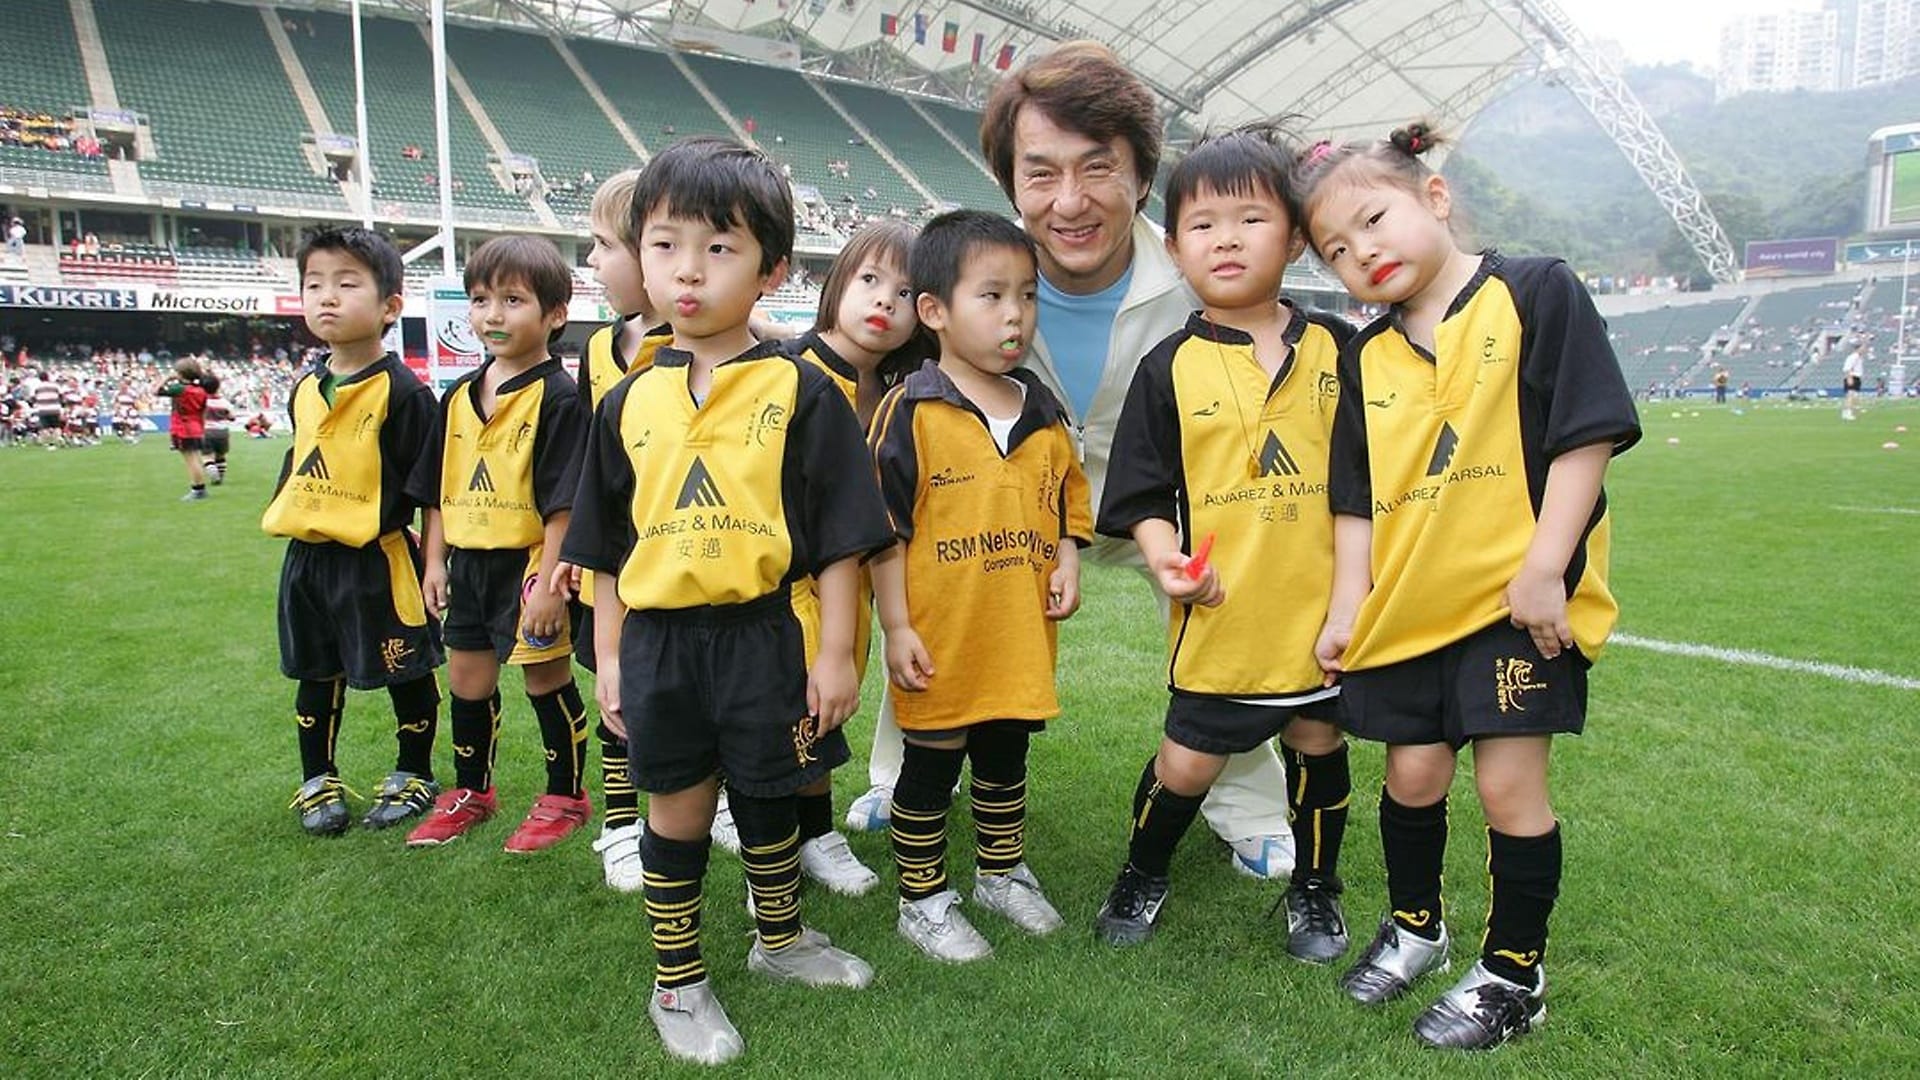 Der weltberühmte Schauspieler Jackie Chan als Laureus Botschafter mit rugbybegeisterten Kindern bei den Hong Kong Sevens.